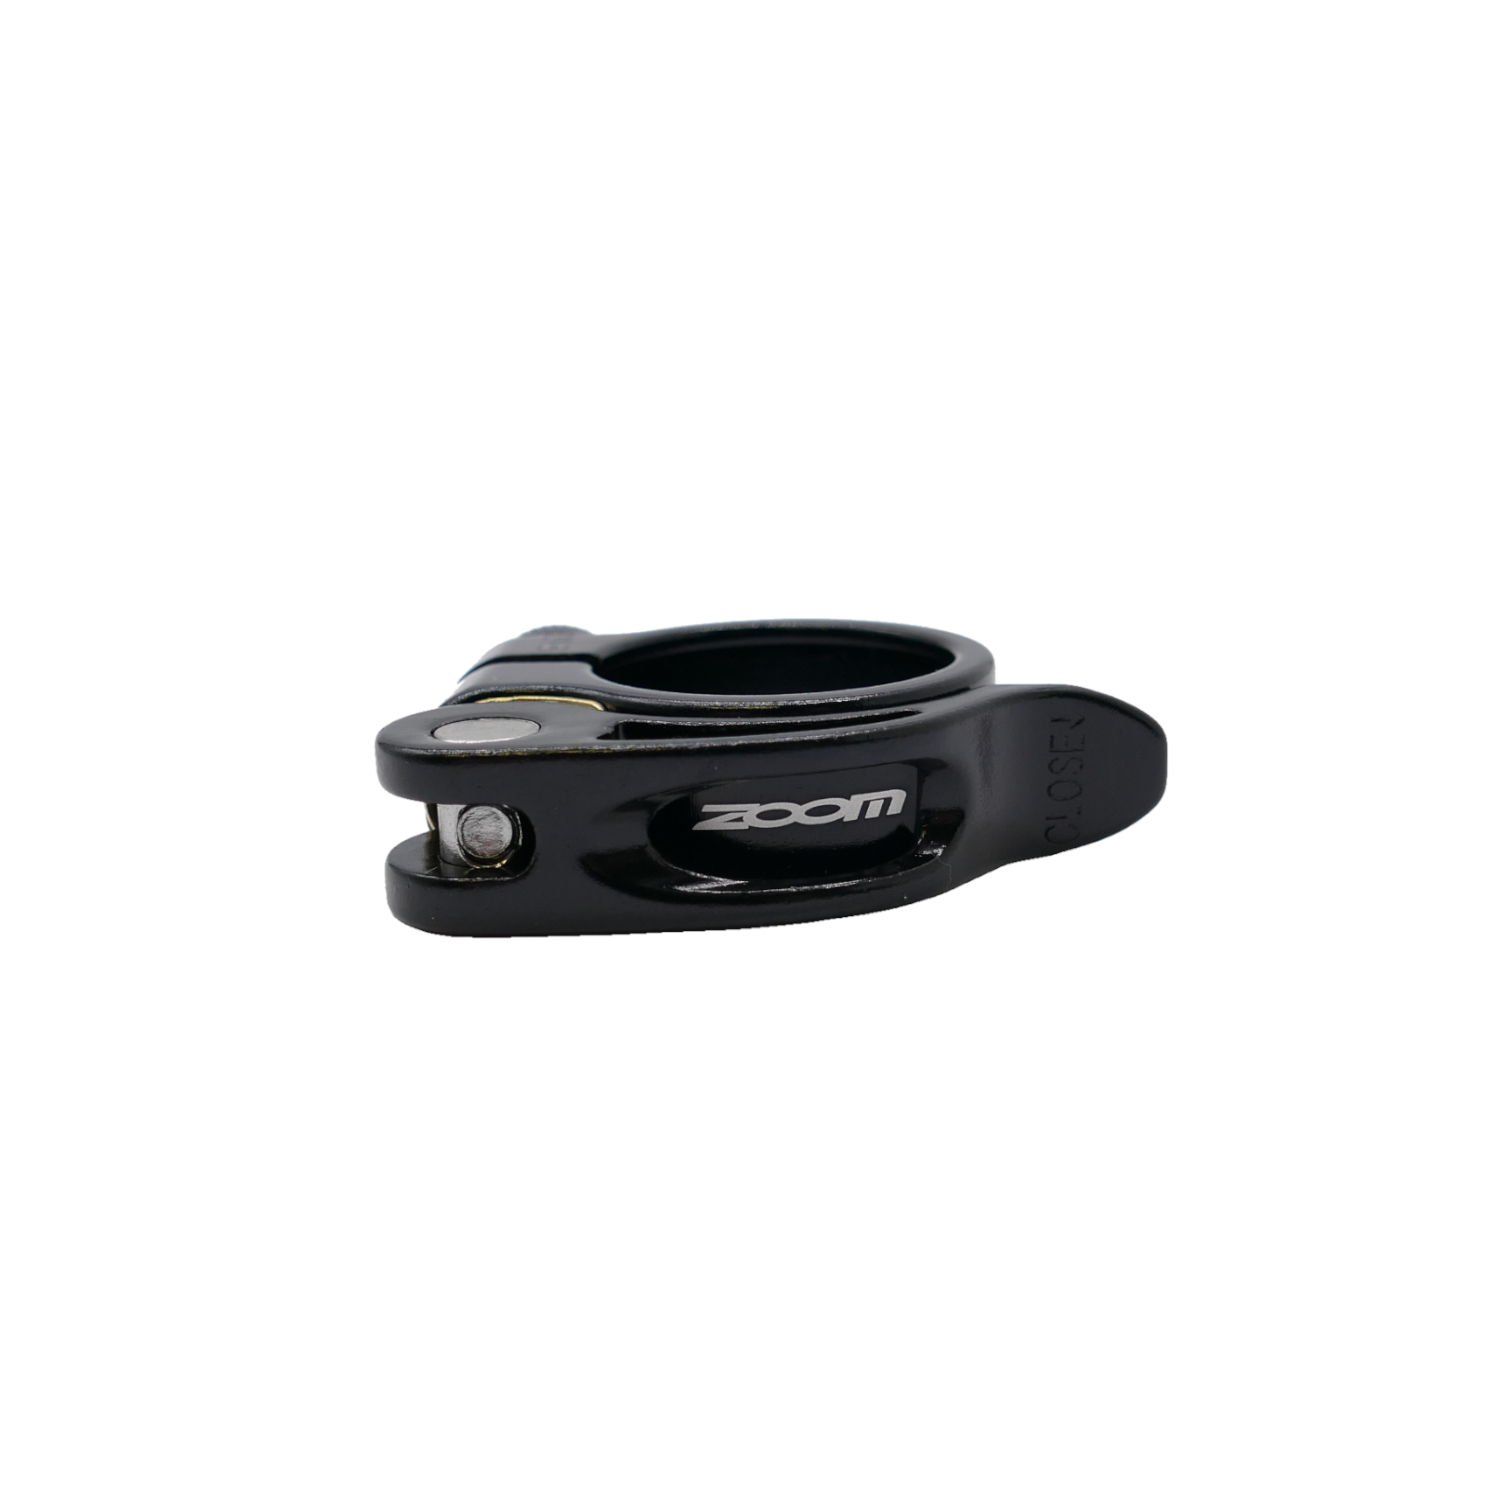 Sattelklemme ZOOM QR mit Schnellspanner, 31,8 mm in schwarz aus ALU